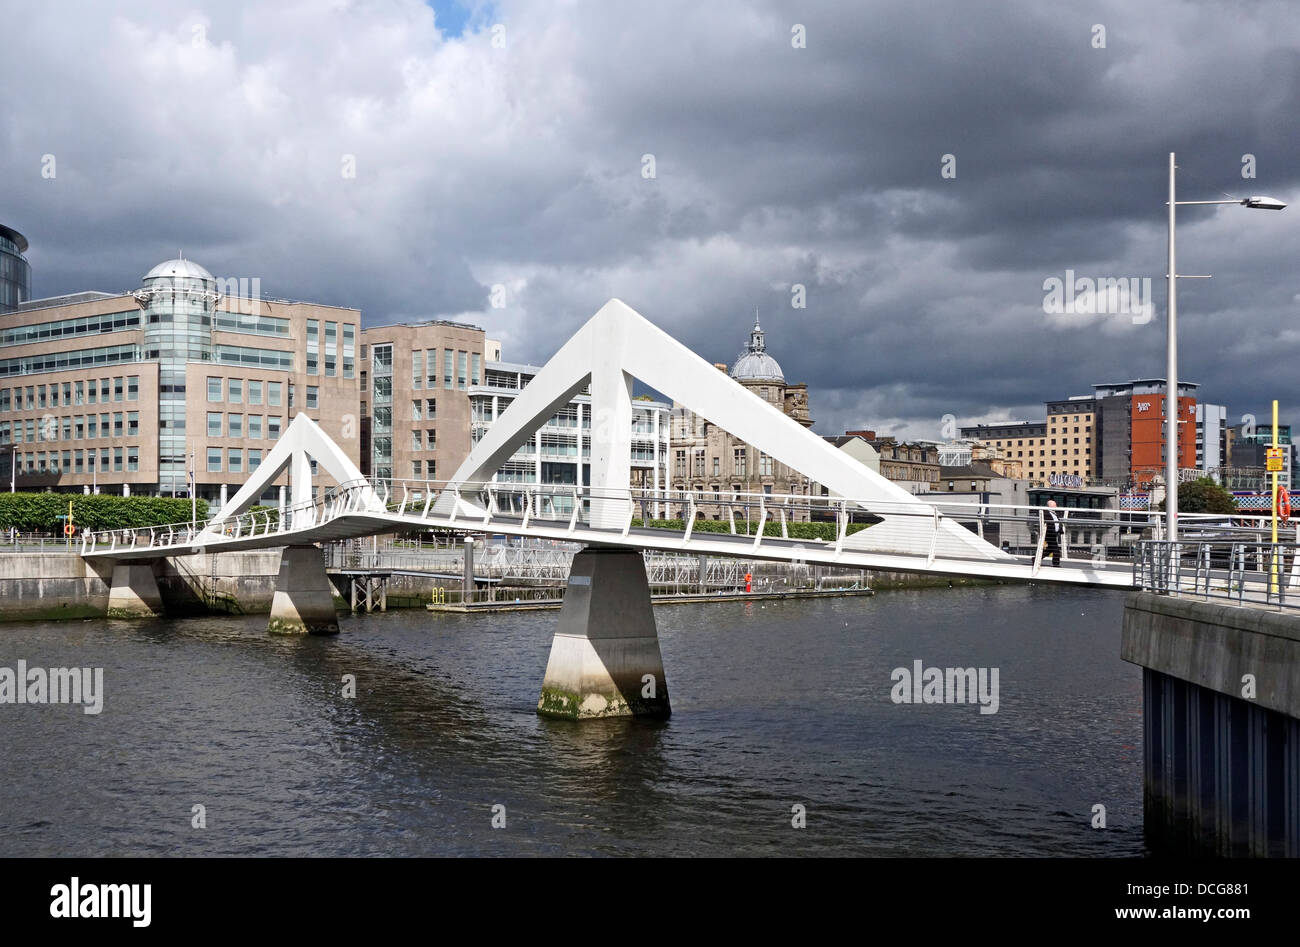 La zone piétonne Broomielaw-Tradeston Pont sur Rivière Clyde Glasgow en Ecosse aussi affectueusement baptisé 'Bridge' quiggly Banque D'Images